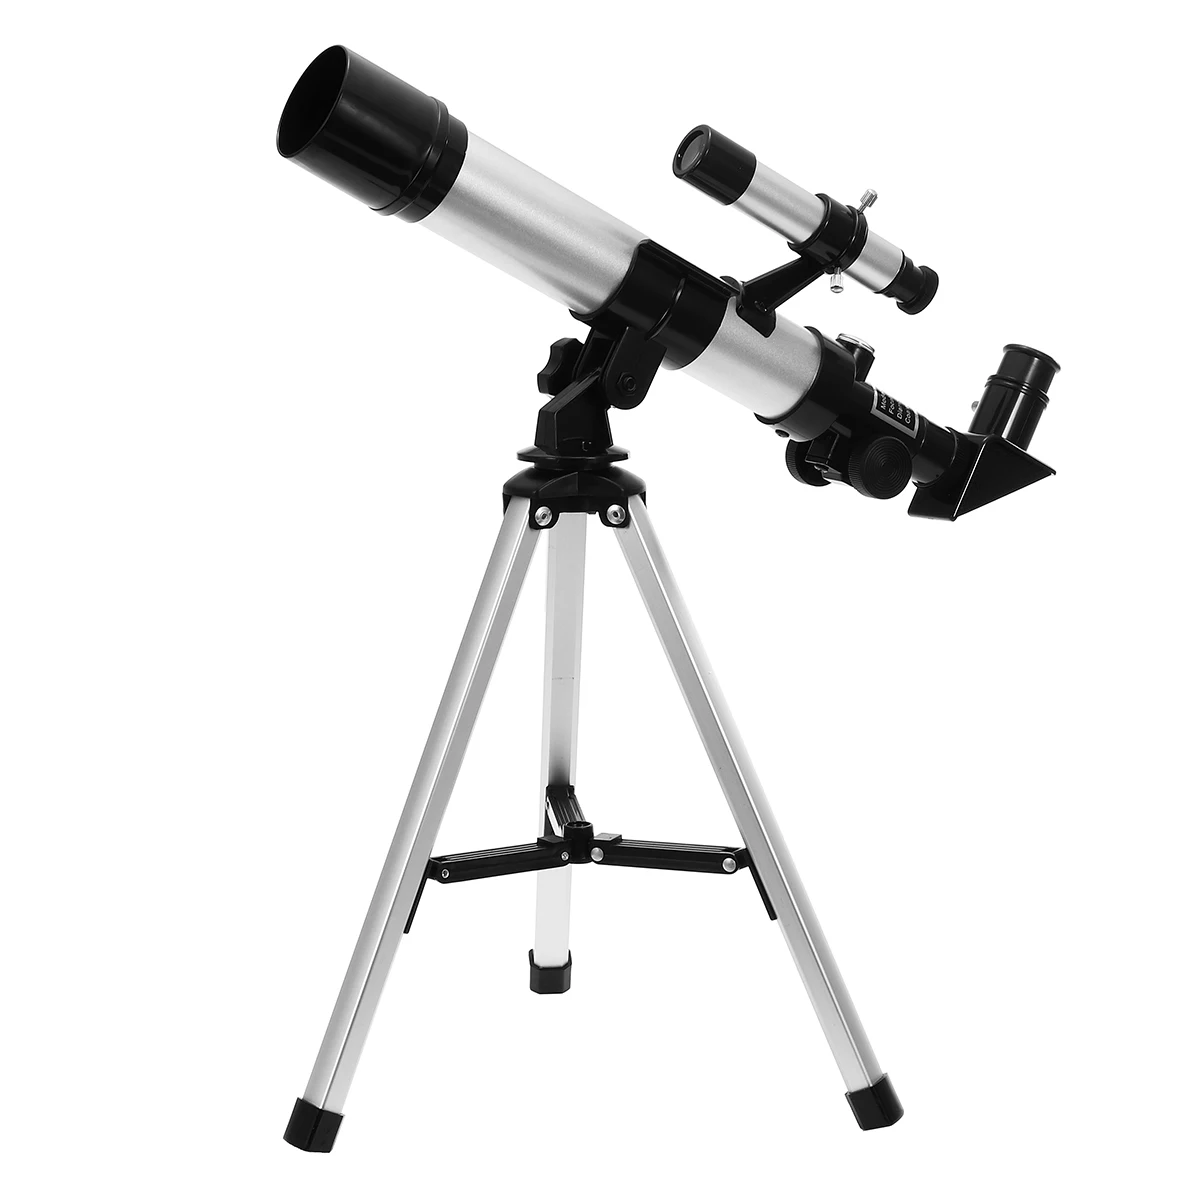 90X астрономический телескоп со штативом, открытый монокуляр, Зрительная труба с просмотром звезд, образовательный инструмент, детский подарок, зум, телескопы